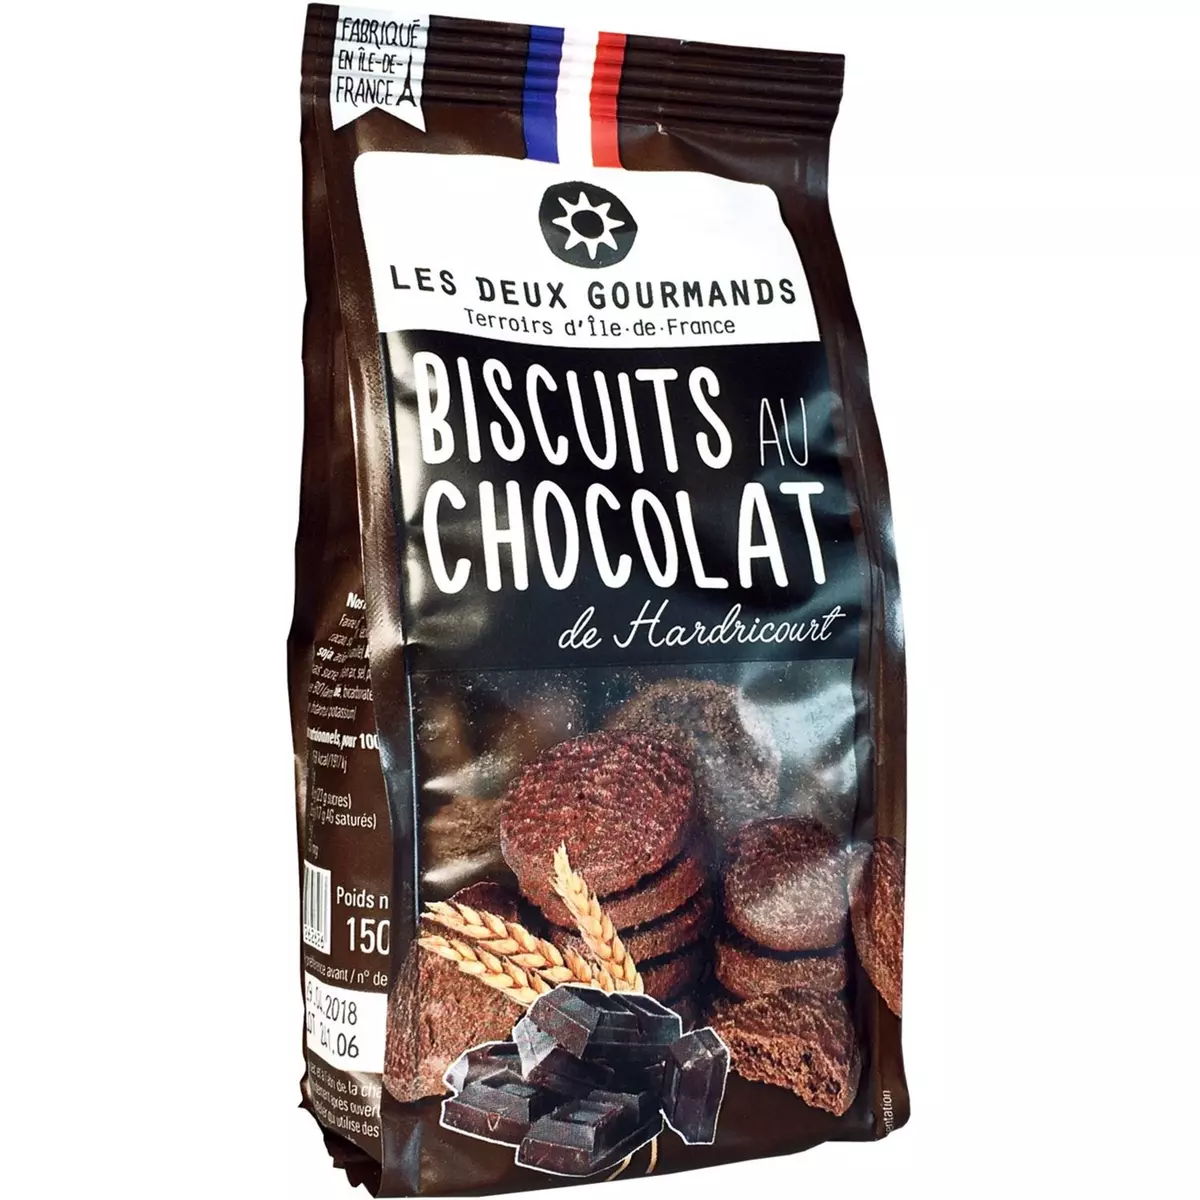 LES DEUX GOURMANDS Biscuits au chocolat de Hardricourt 150g